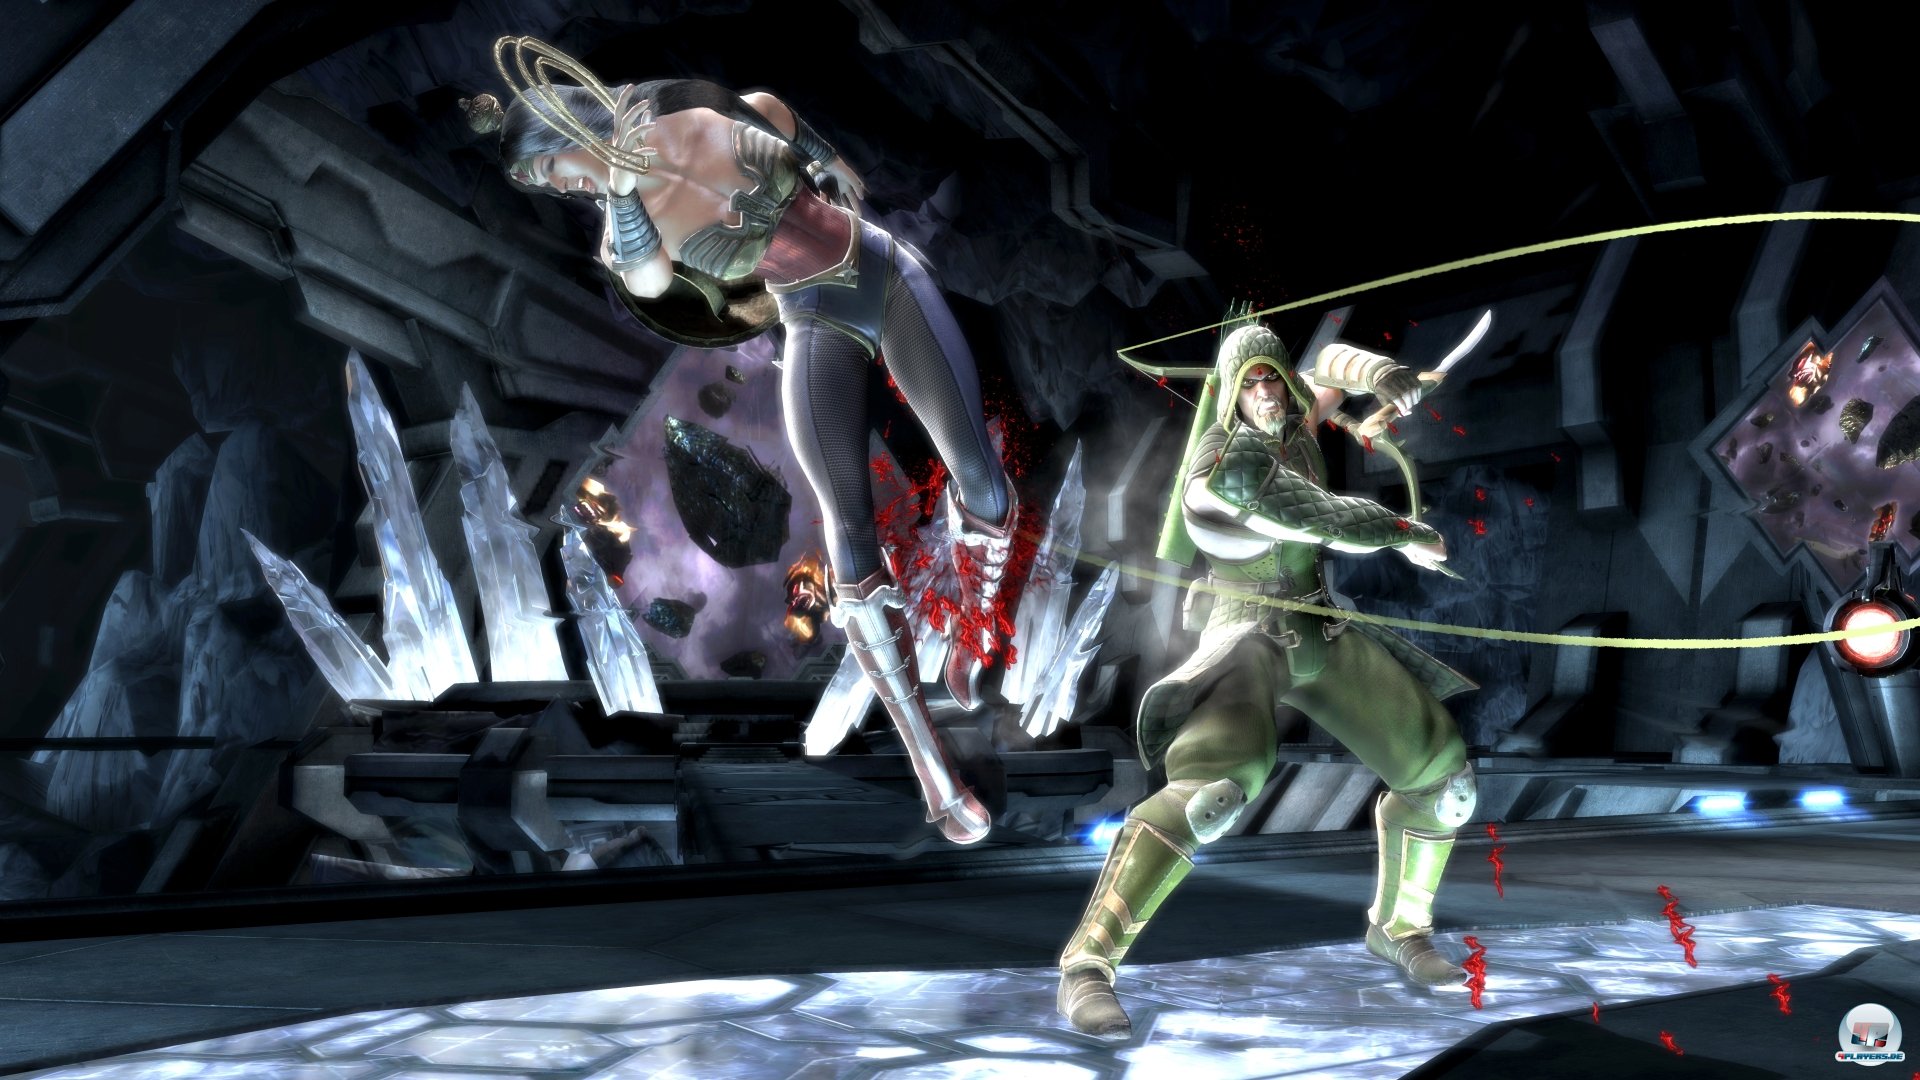 Auch auf Wii U können die Kämpfe von Helden und Bösewichten unterhalten.